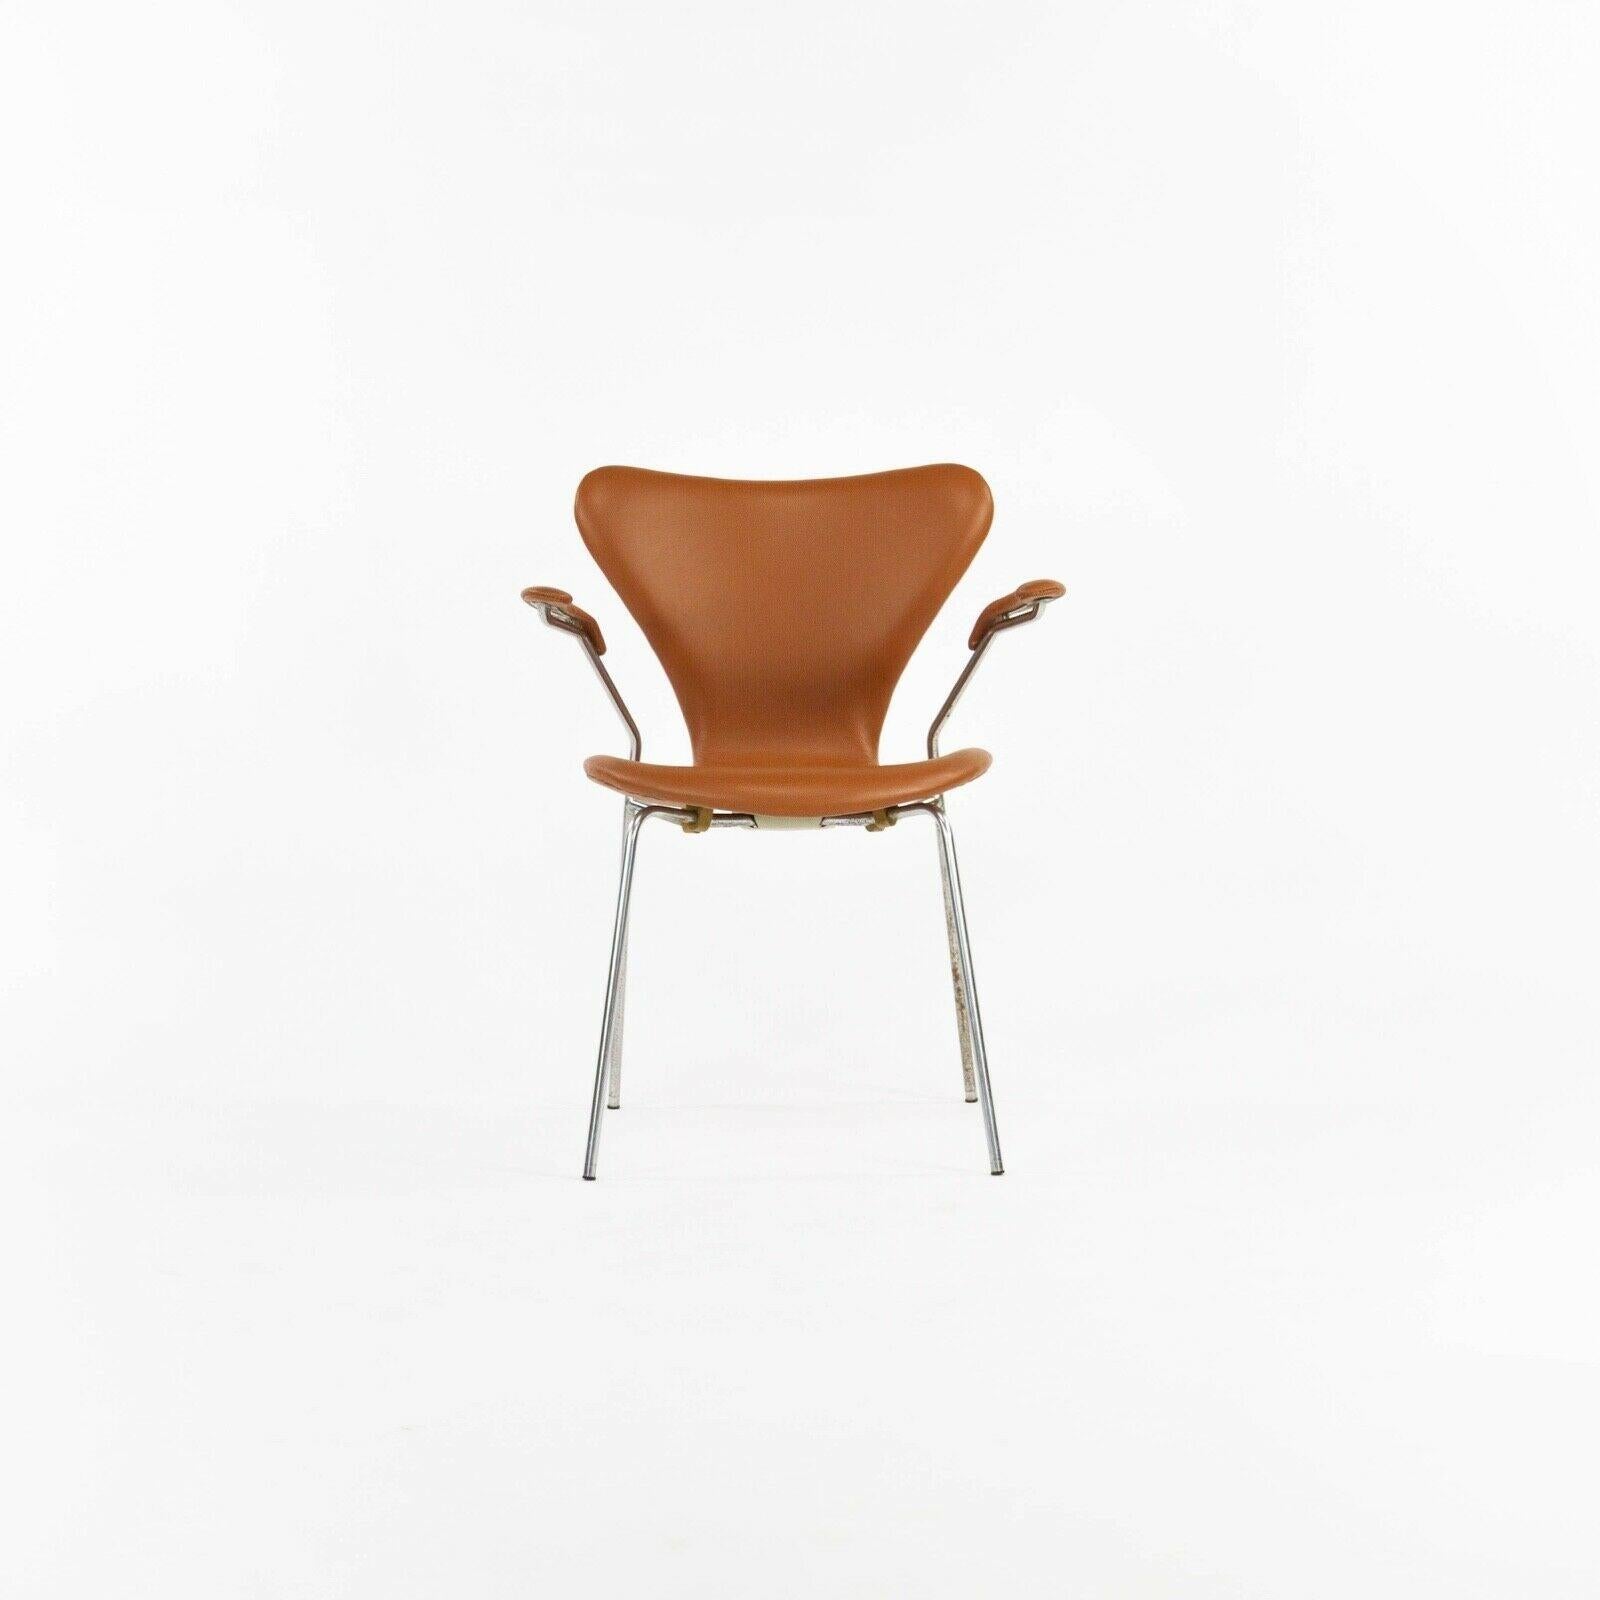 Zum Verkauf steht ein Satz von vier (der angegebene Preis ist für vier, aber bis zu 12 sind verfügbar) Arne Jacobsen Serie 7 Sessel in Cognac Leder. Diese Stühle wurden gerade von einer der renommiertesten Polstereien des Landes für modernes Design